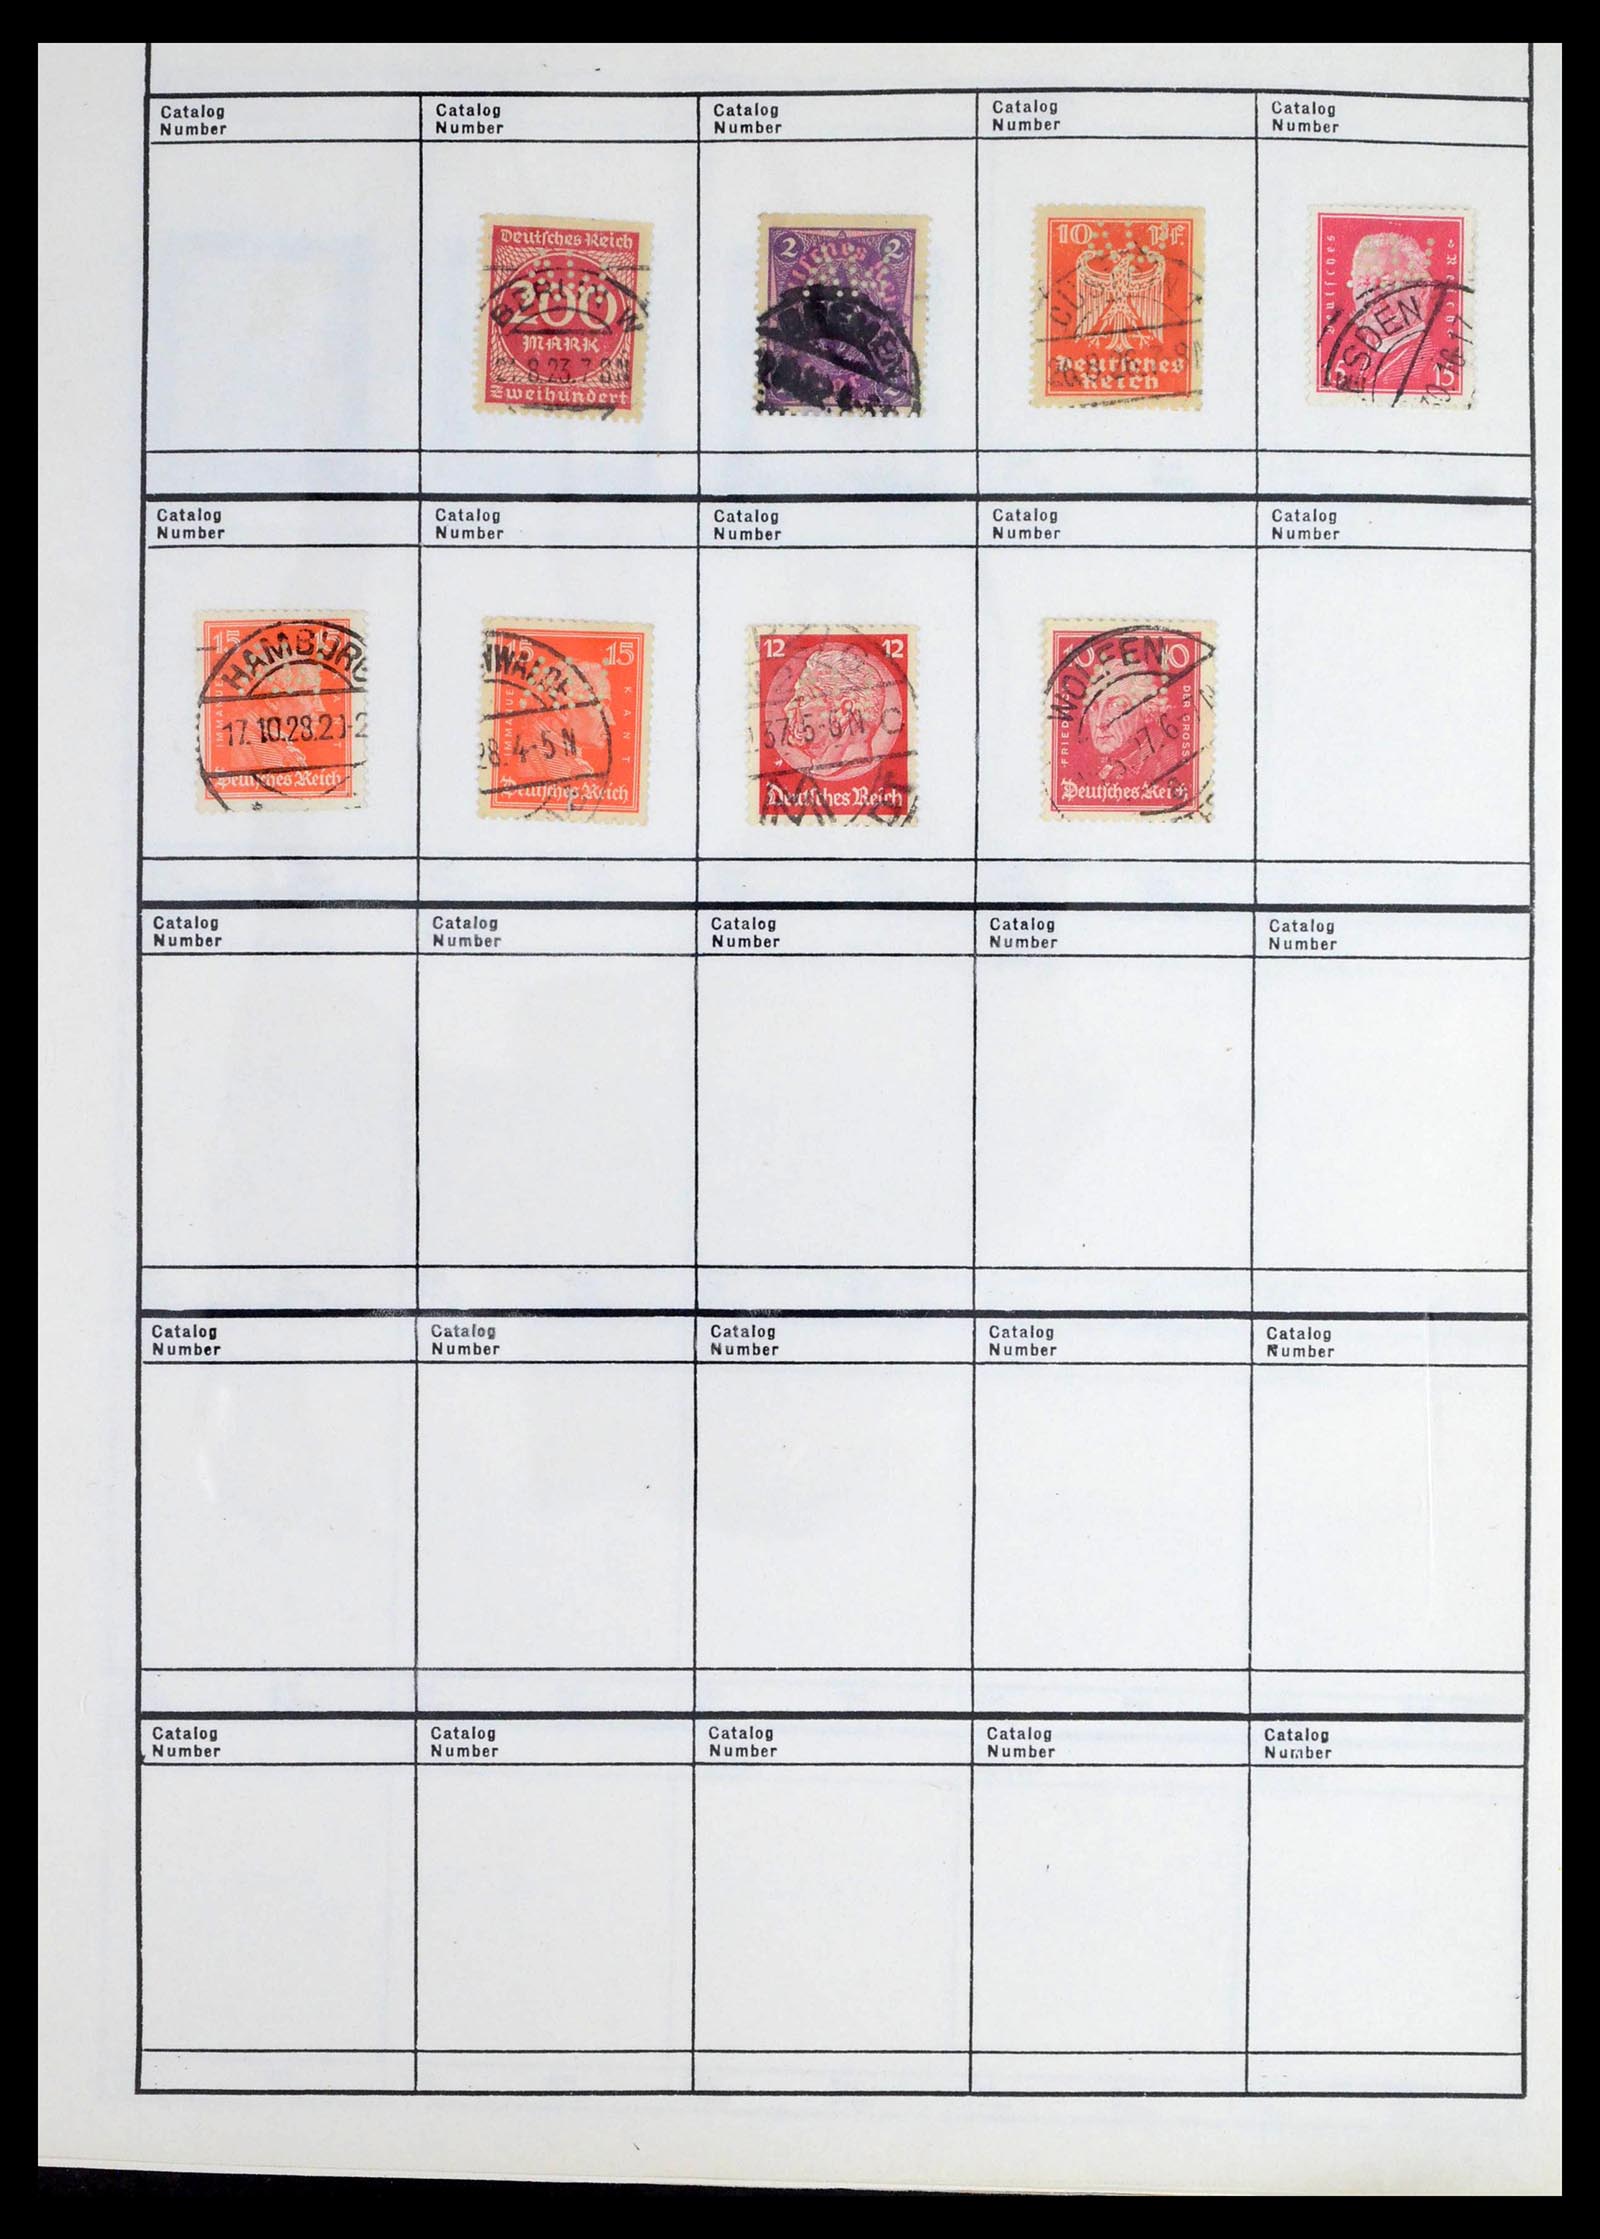 39480 0046 - Stamp collection 39480 German Reich perfins 1880-1955.